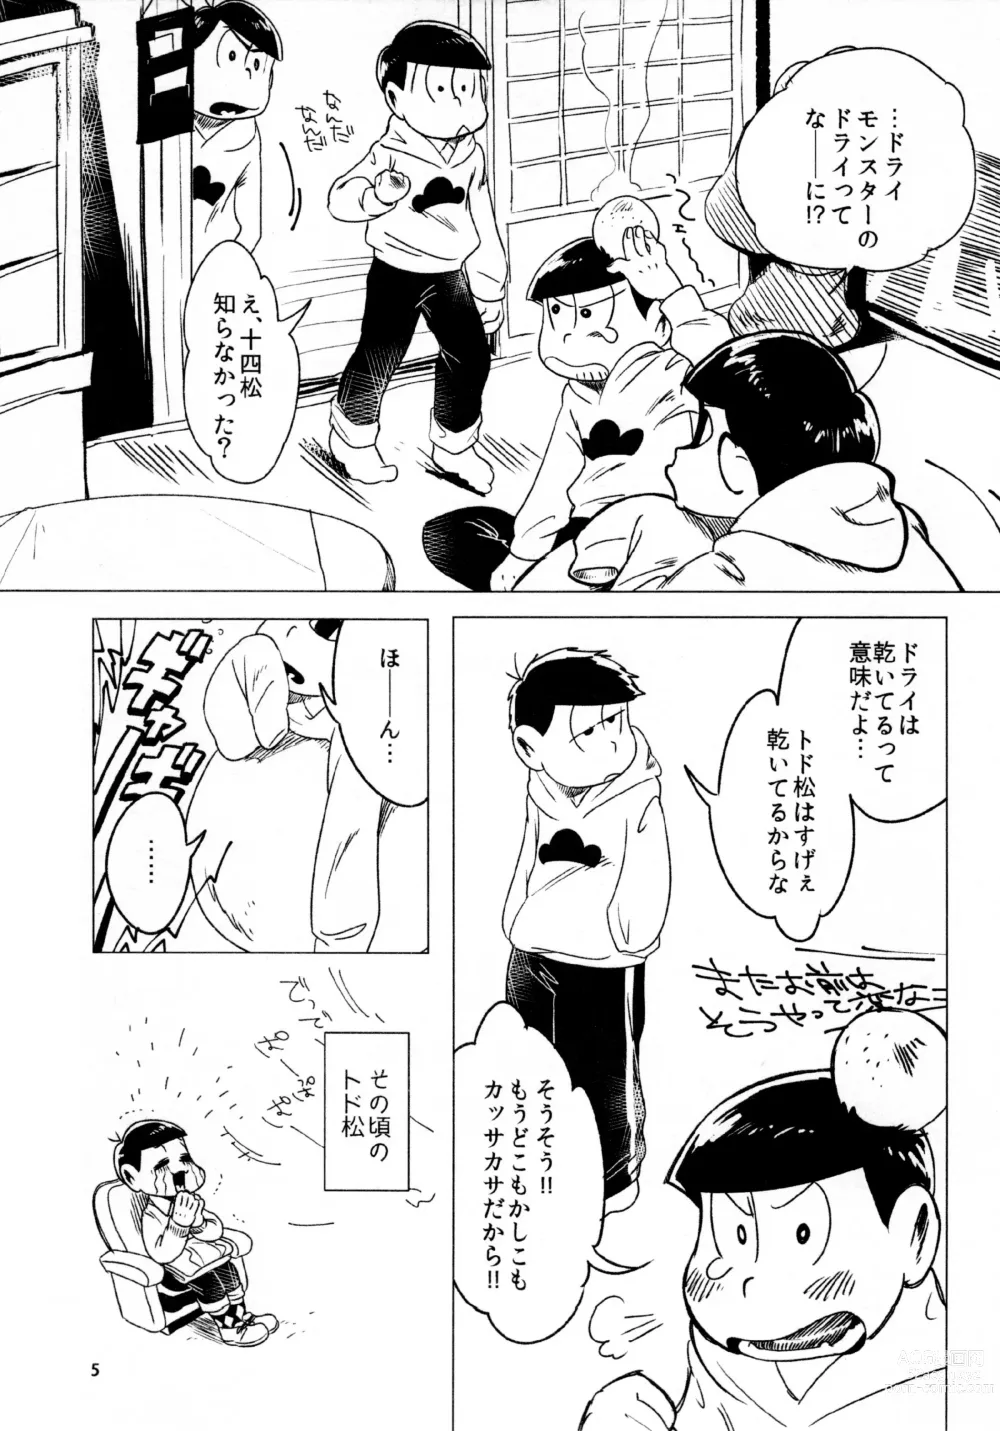 Page 5 of doujinshi Todomatsu Bishonure Keikaku